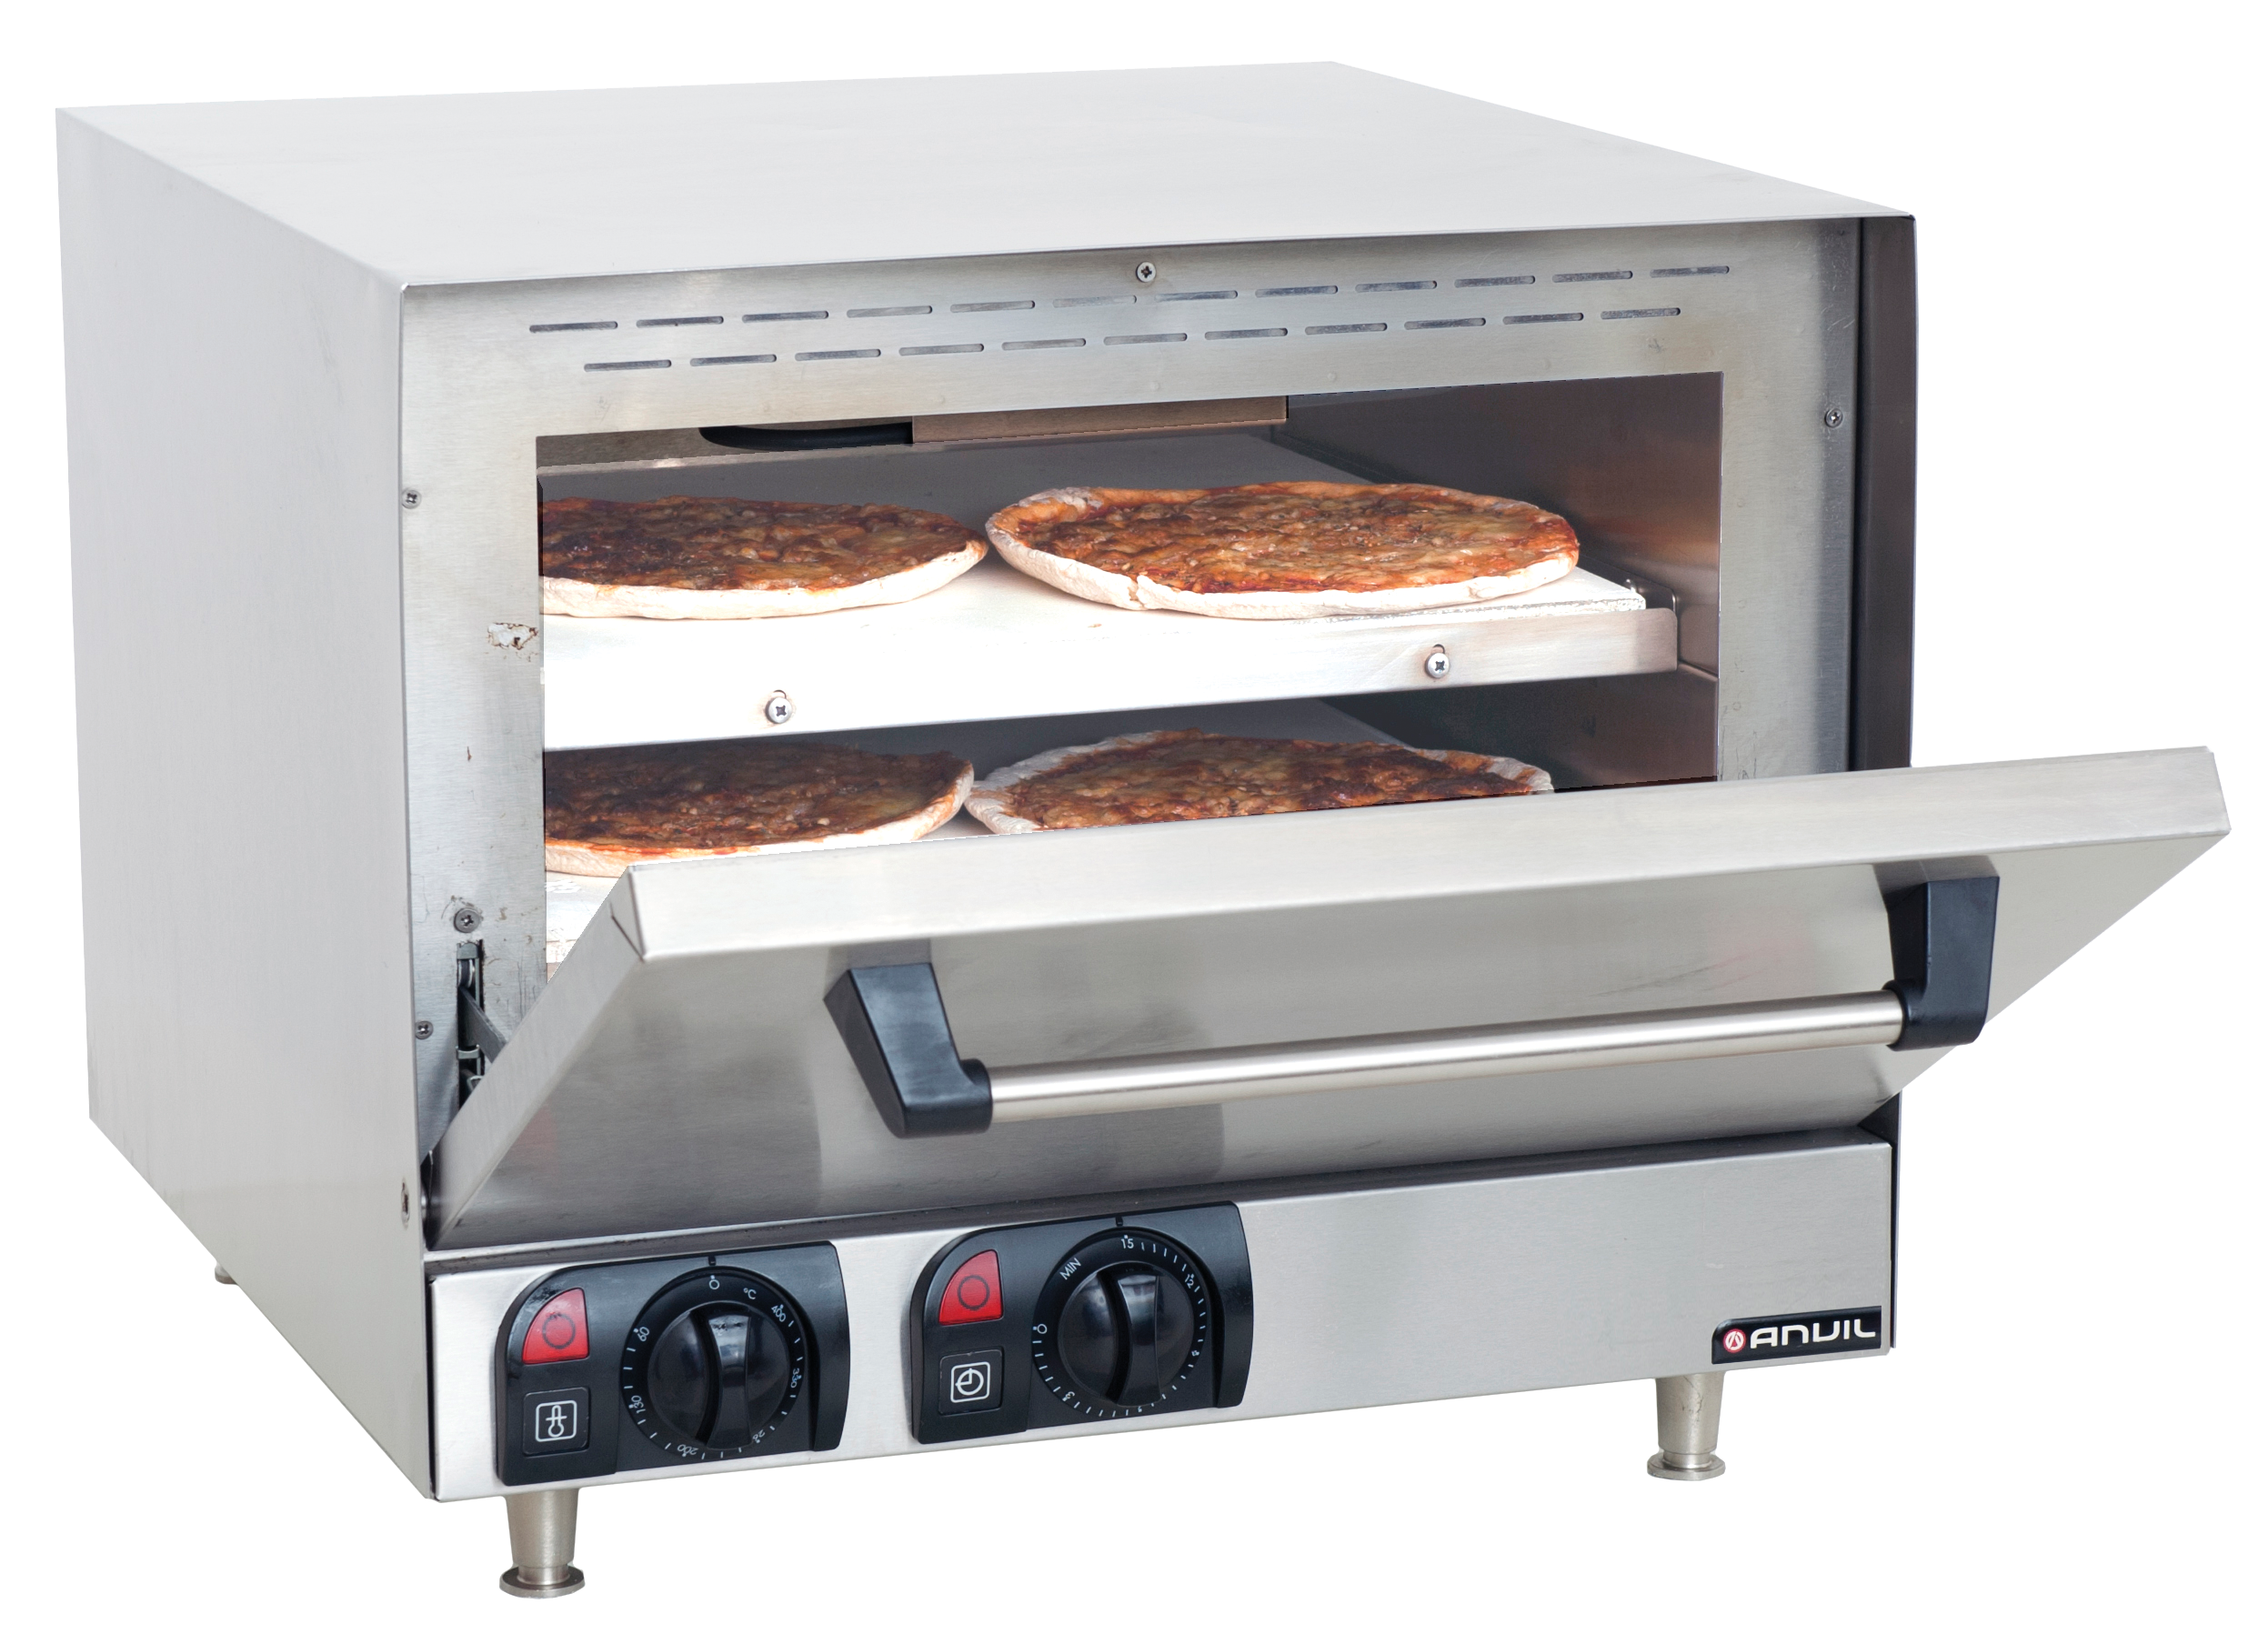 Anvil Pizza Oven